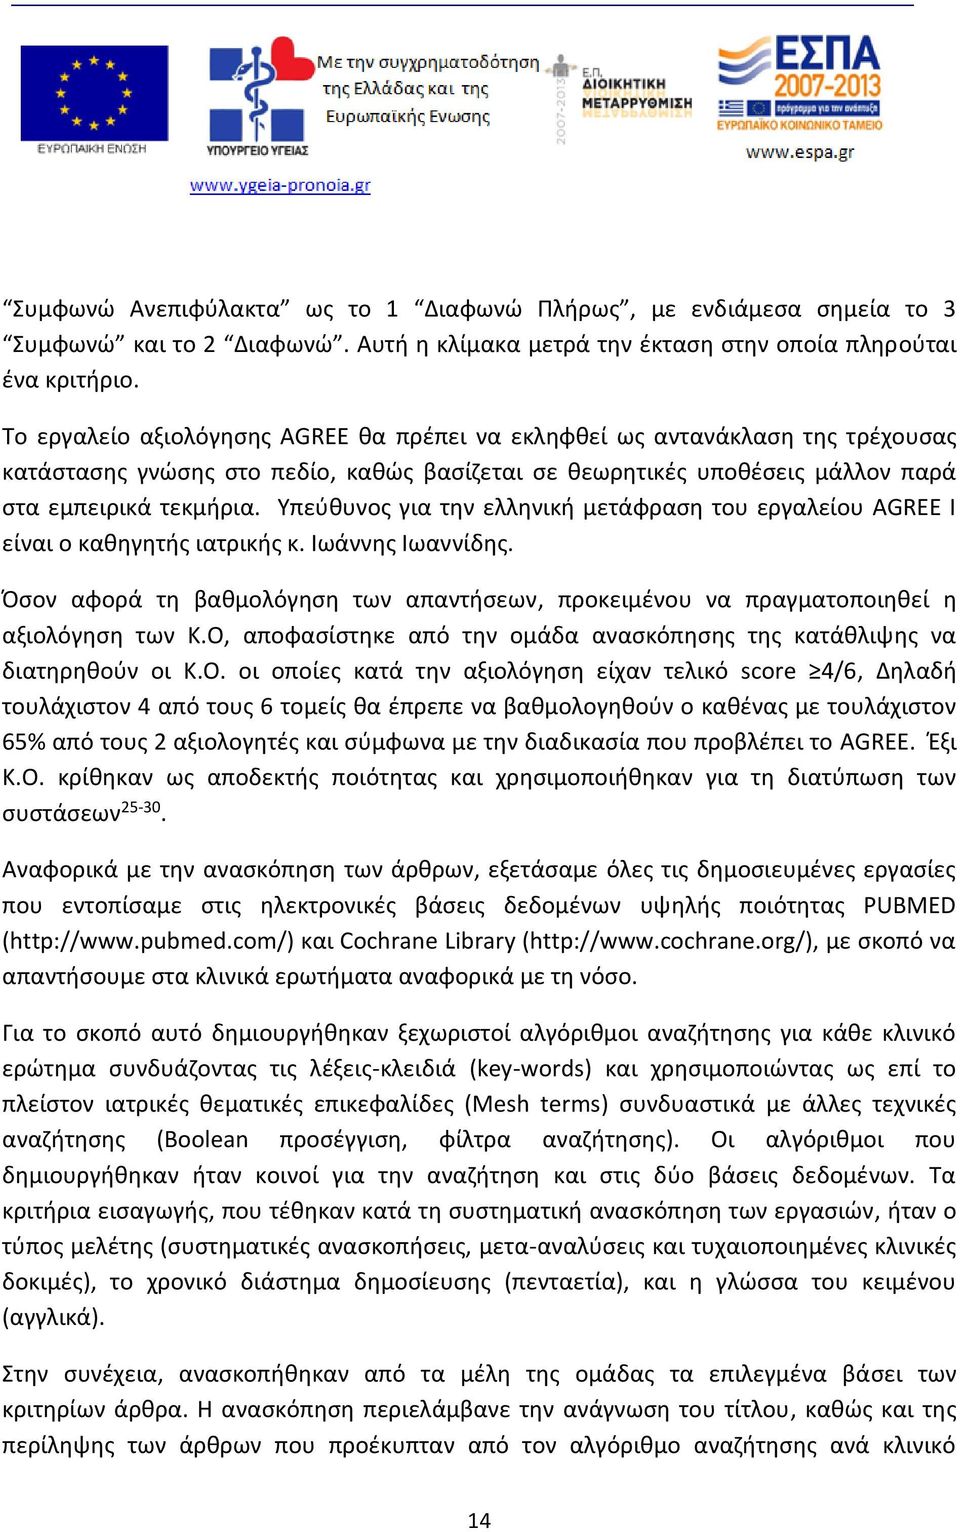 Υπεύθυνος για την ελληνική μετάφραση του εργαλείου AGREE I είναι ο καθηγητής ιατρικής κ. Ιωάννης Ιωαννίδης. Όσον αφορά τη βαθμολόγηση των απαντήσεων, προκειμένου να πραγματοποιηθεί η αξιολόγηση των Κ.